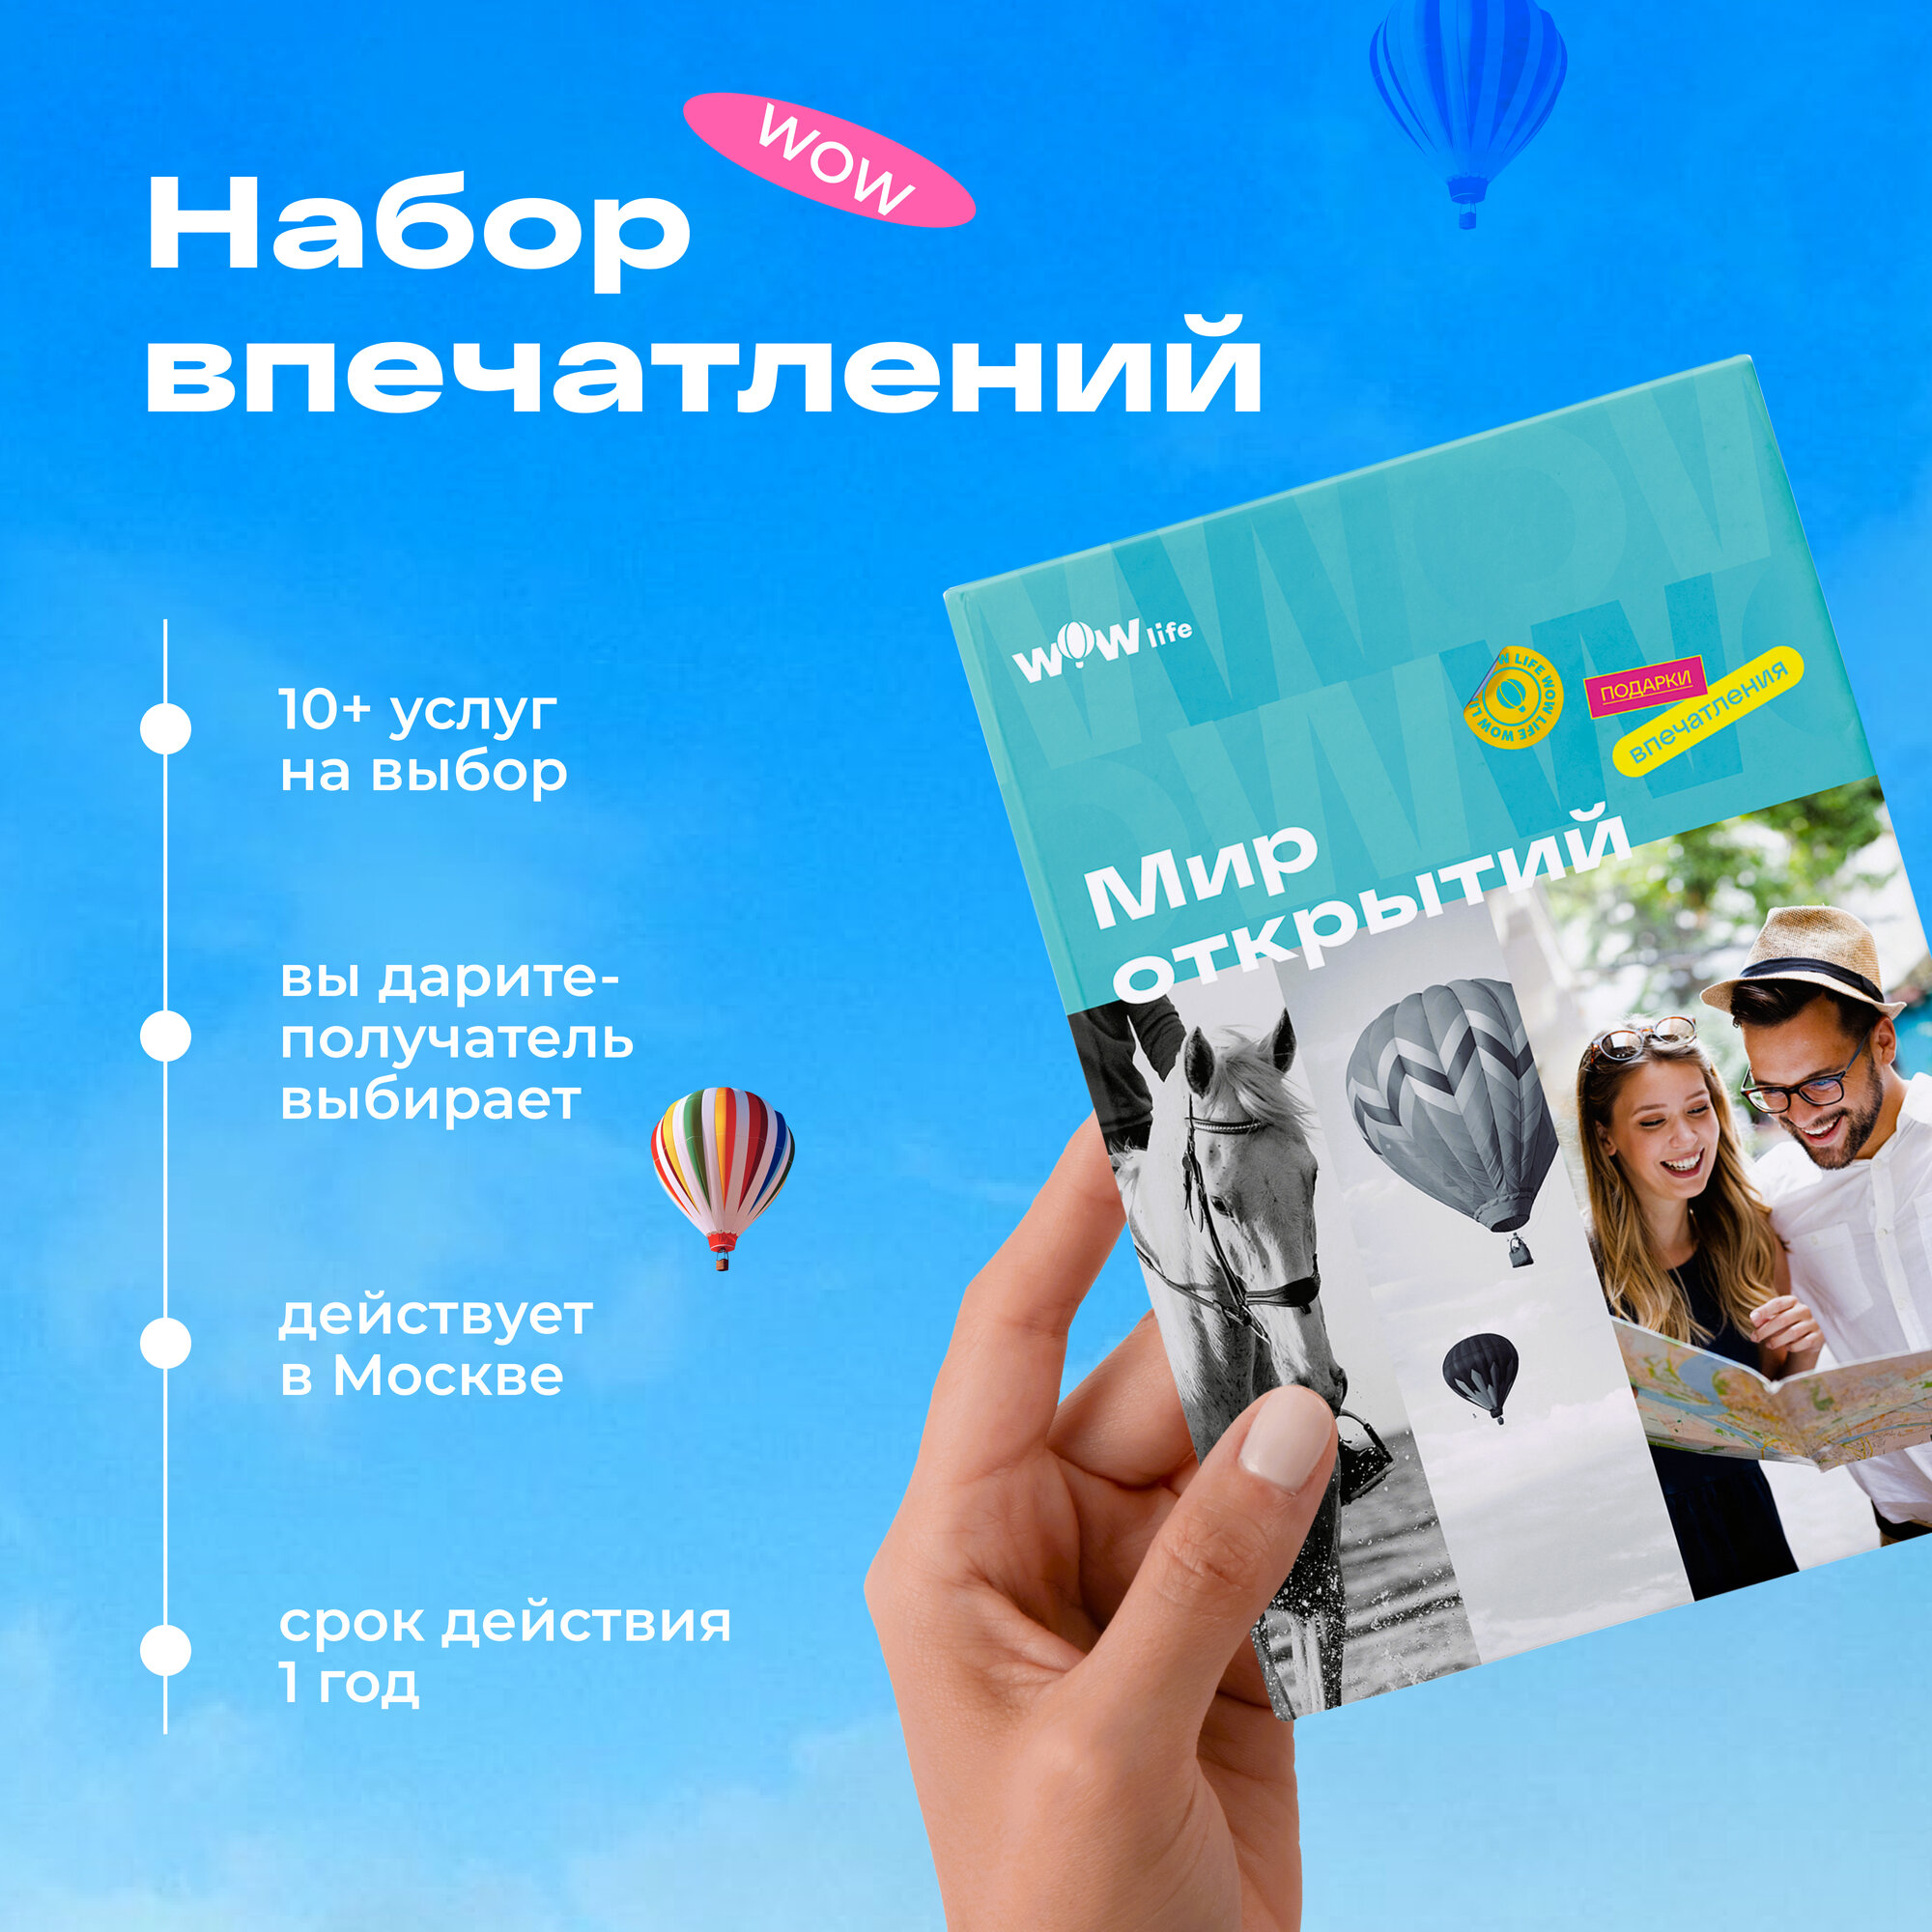 Подарочный сертификат WOWlife "Мир открытий" - набор из впечатлений на выбор, Москва